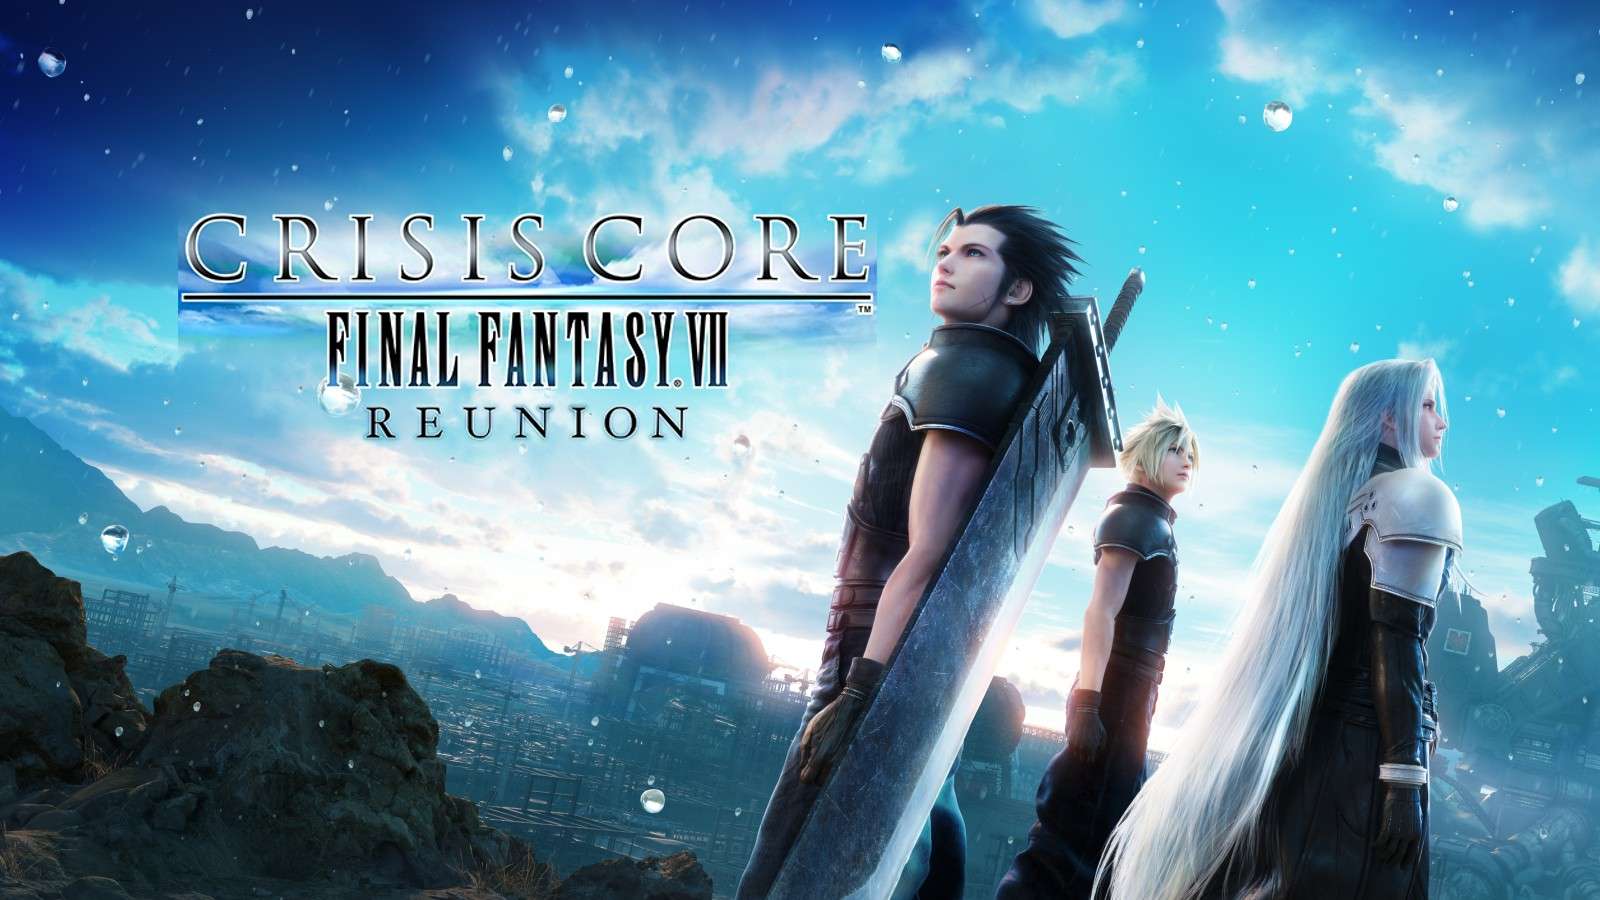 Final Fantasy 7 Rebirth director says Crisis Core star Zack has